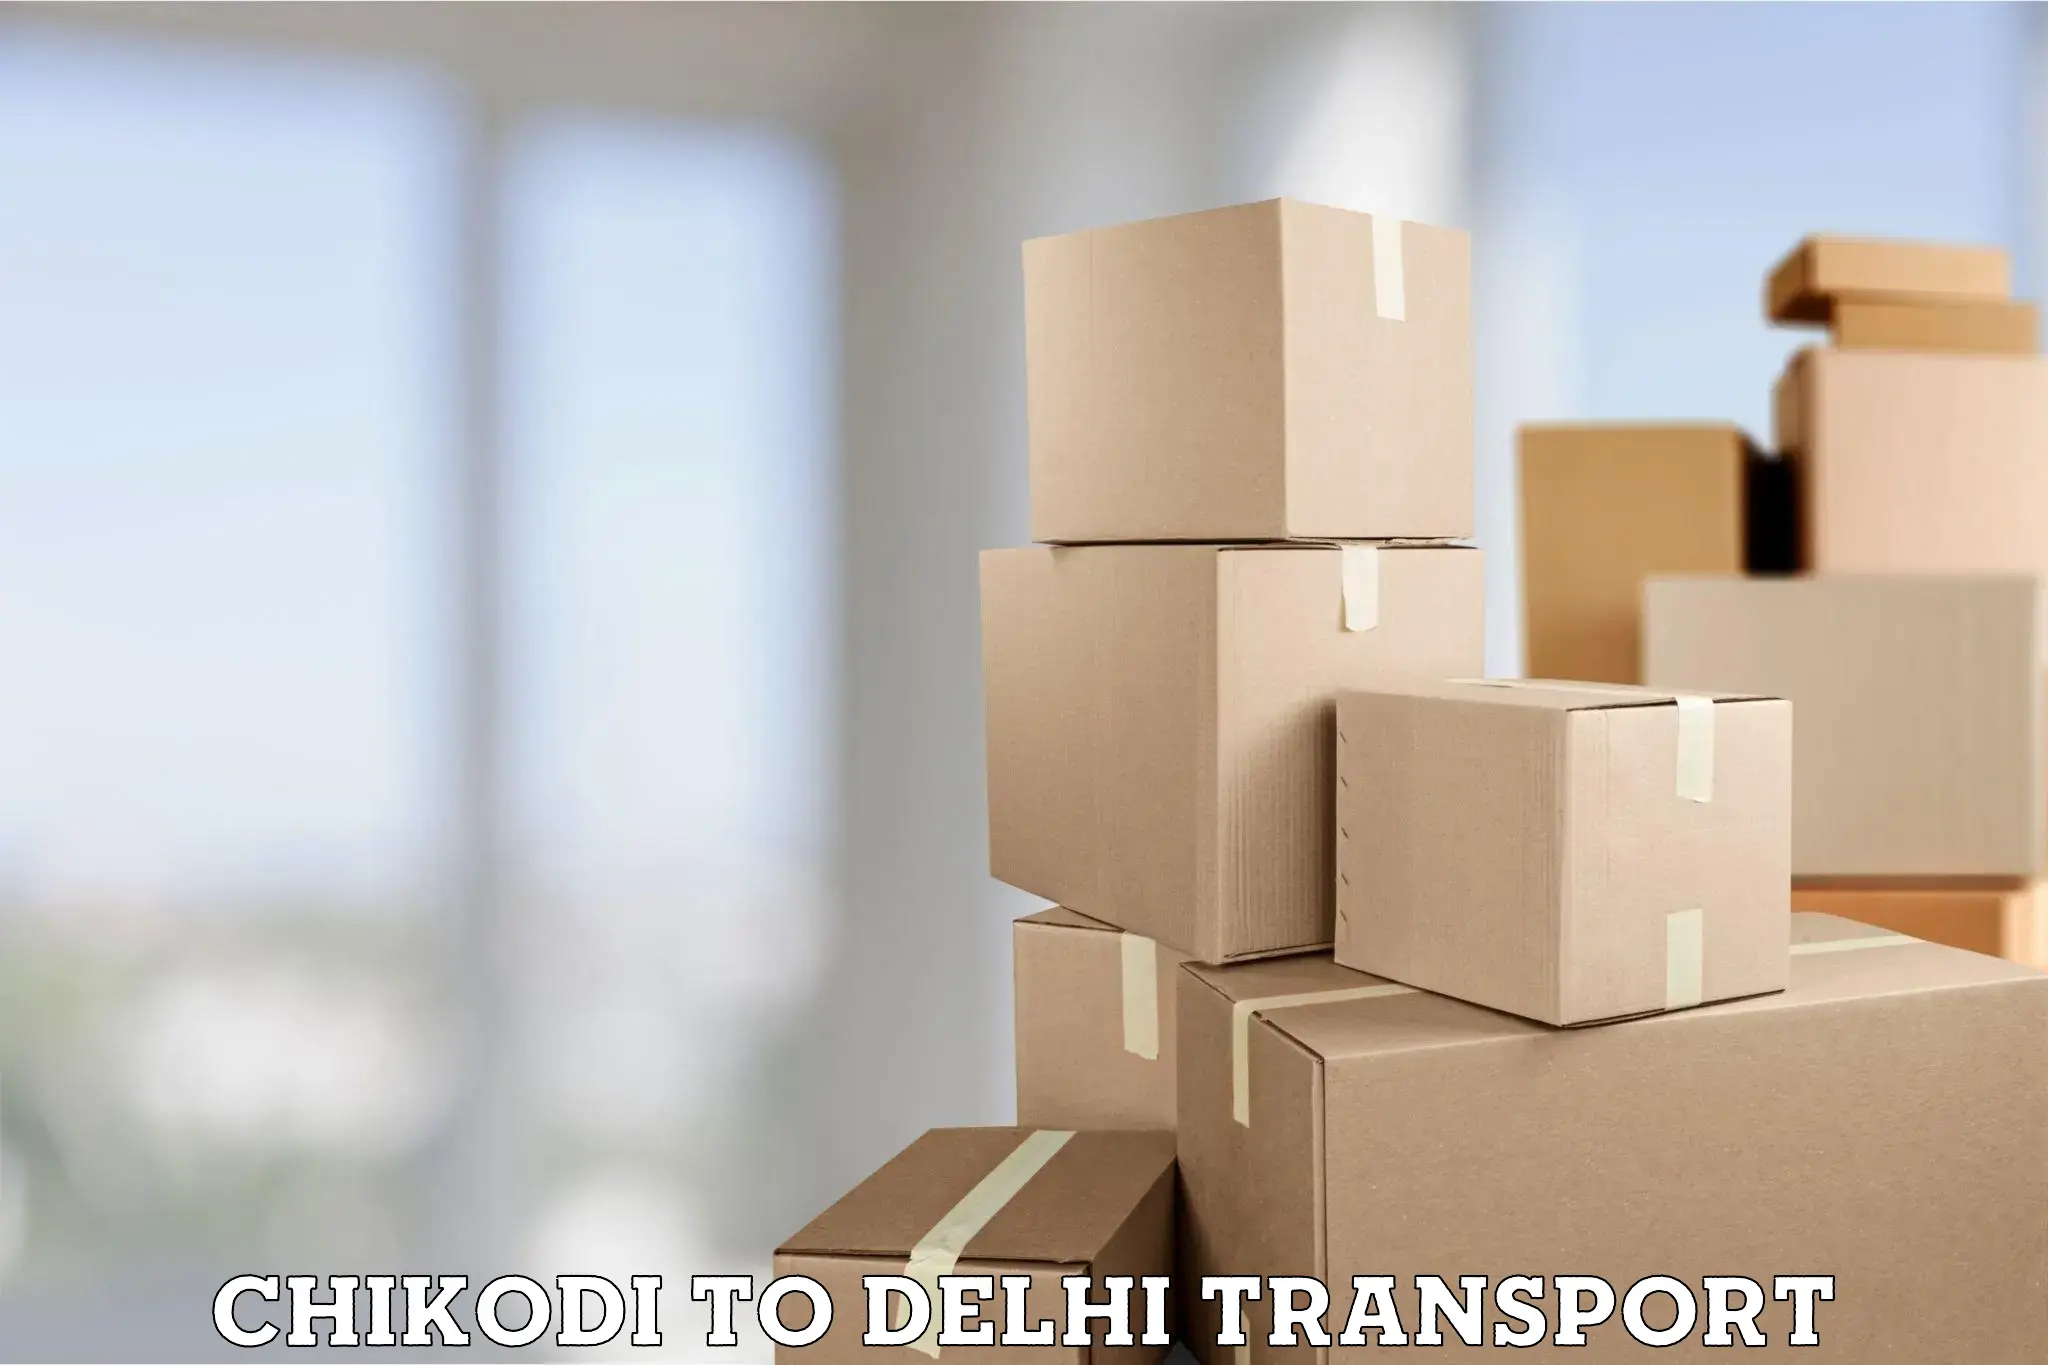 Land transport services in Chikodi to Krishna Nagar